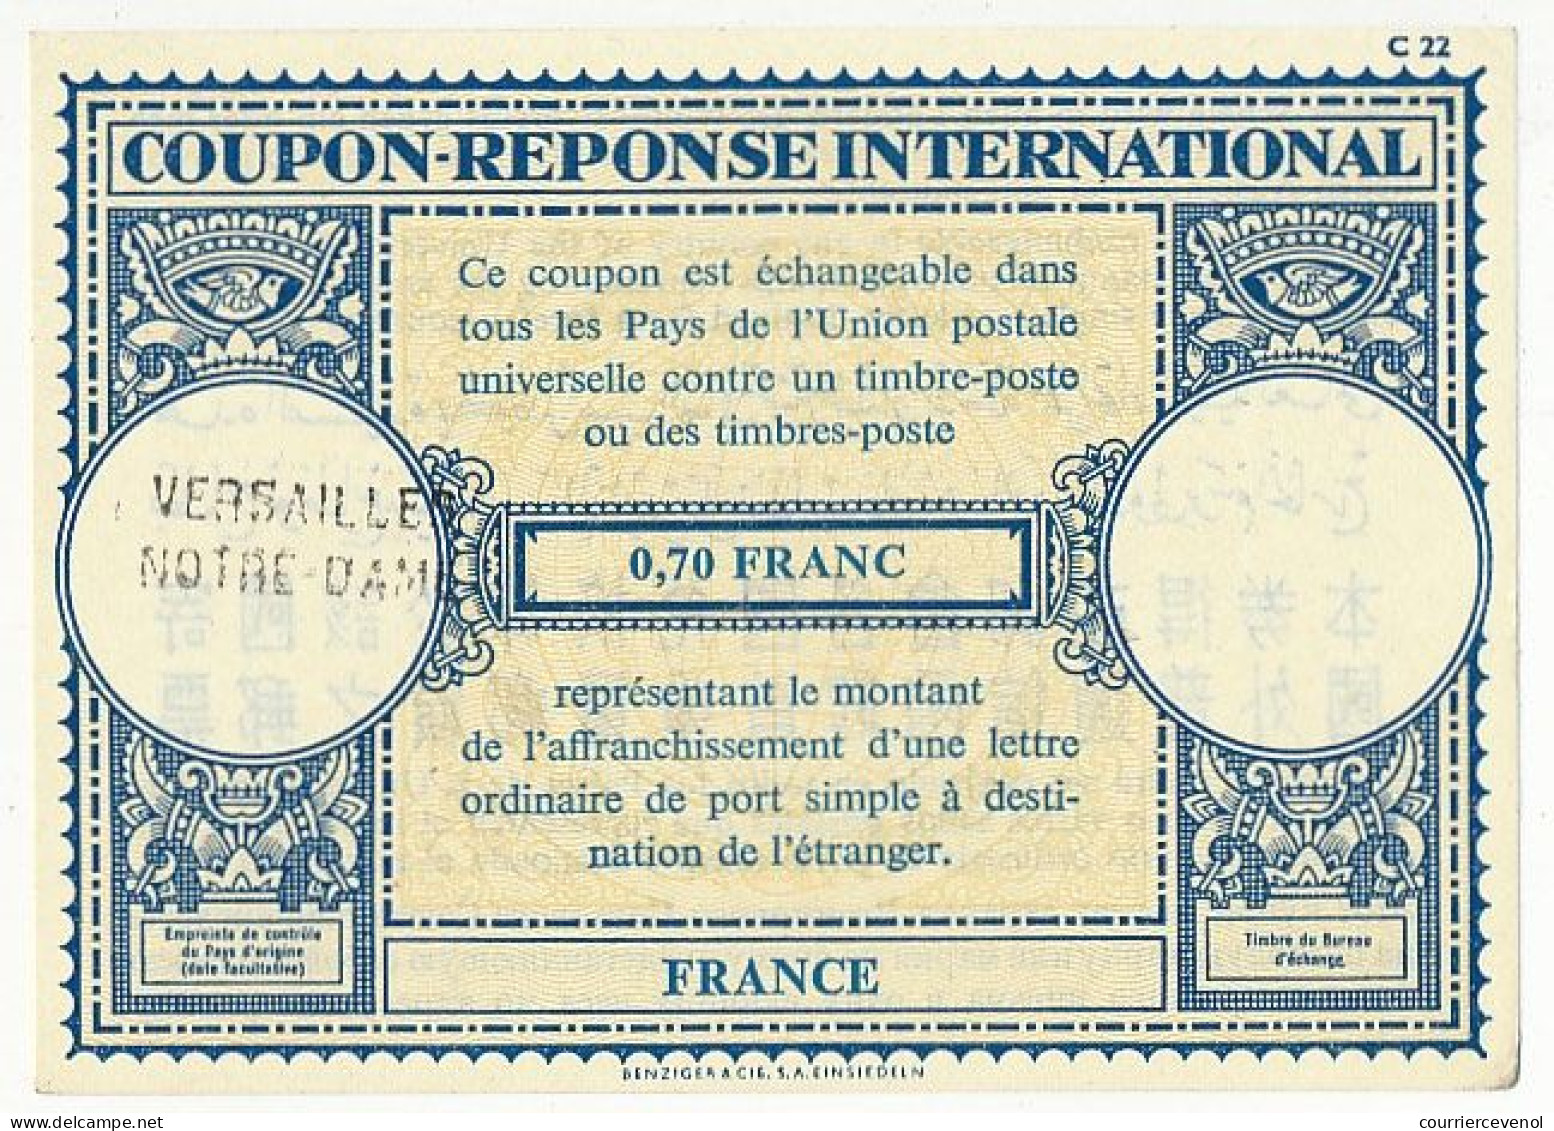 Coupon-Réponse International 0,70 Franc - Cachet Linéaire Versailles Notre Dame - Antwoordbons